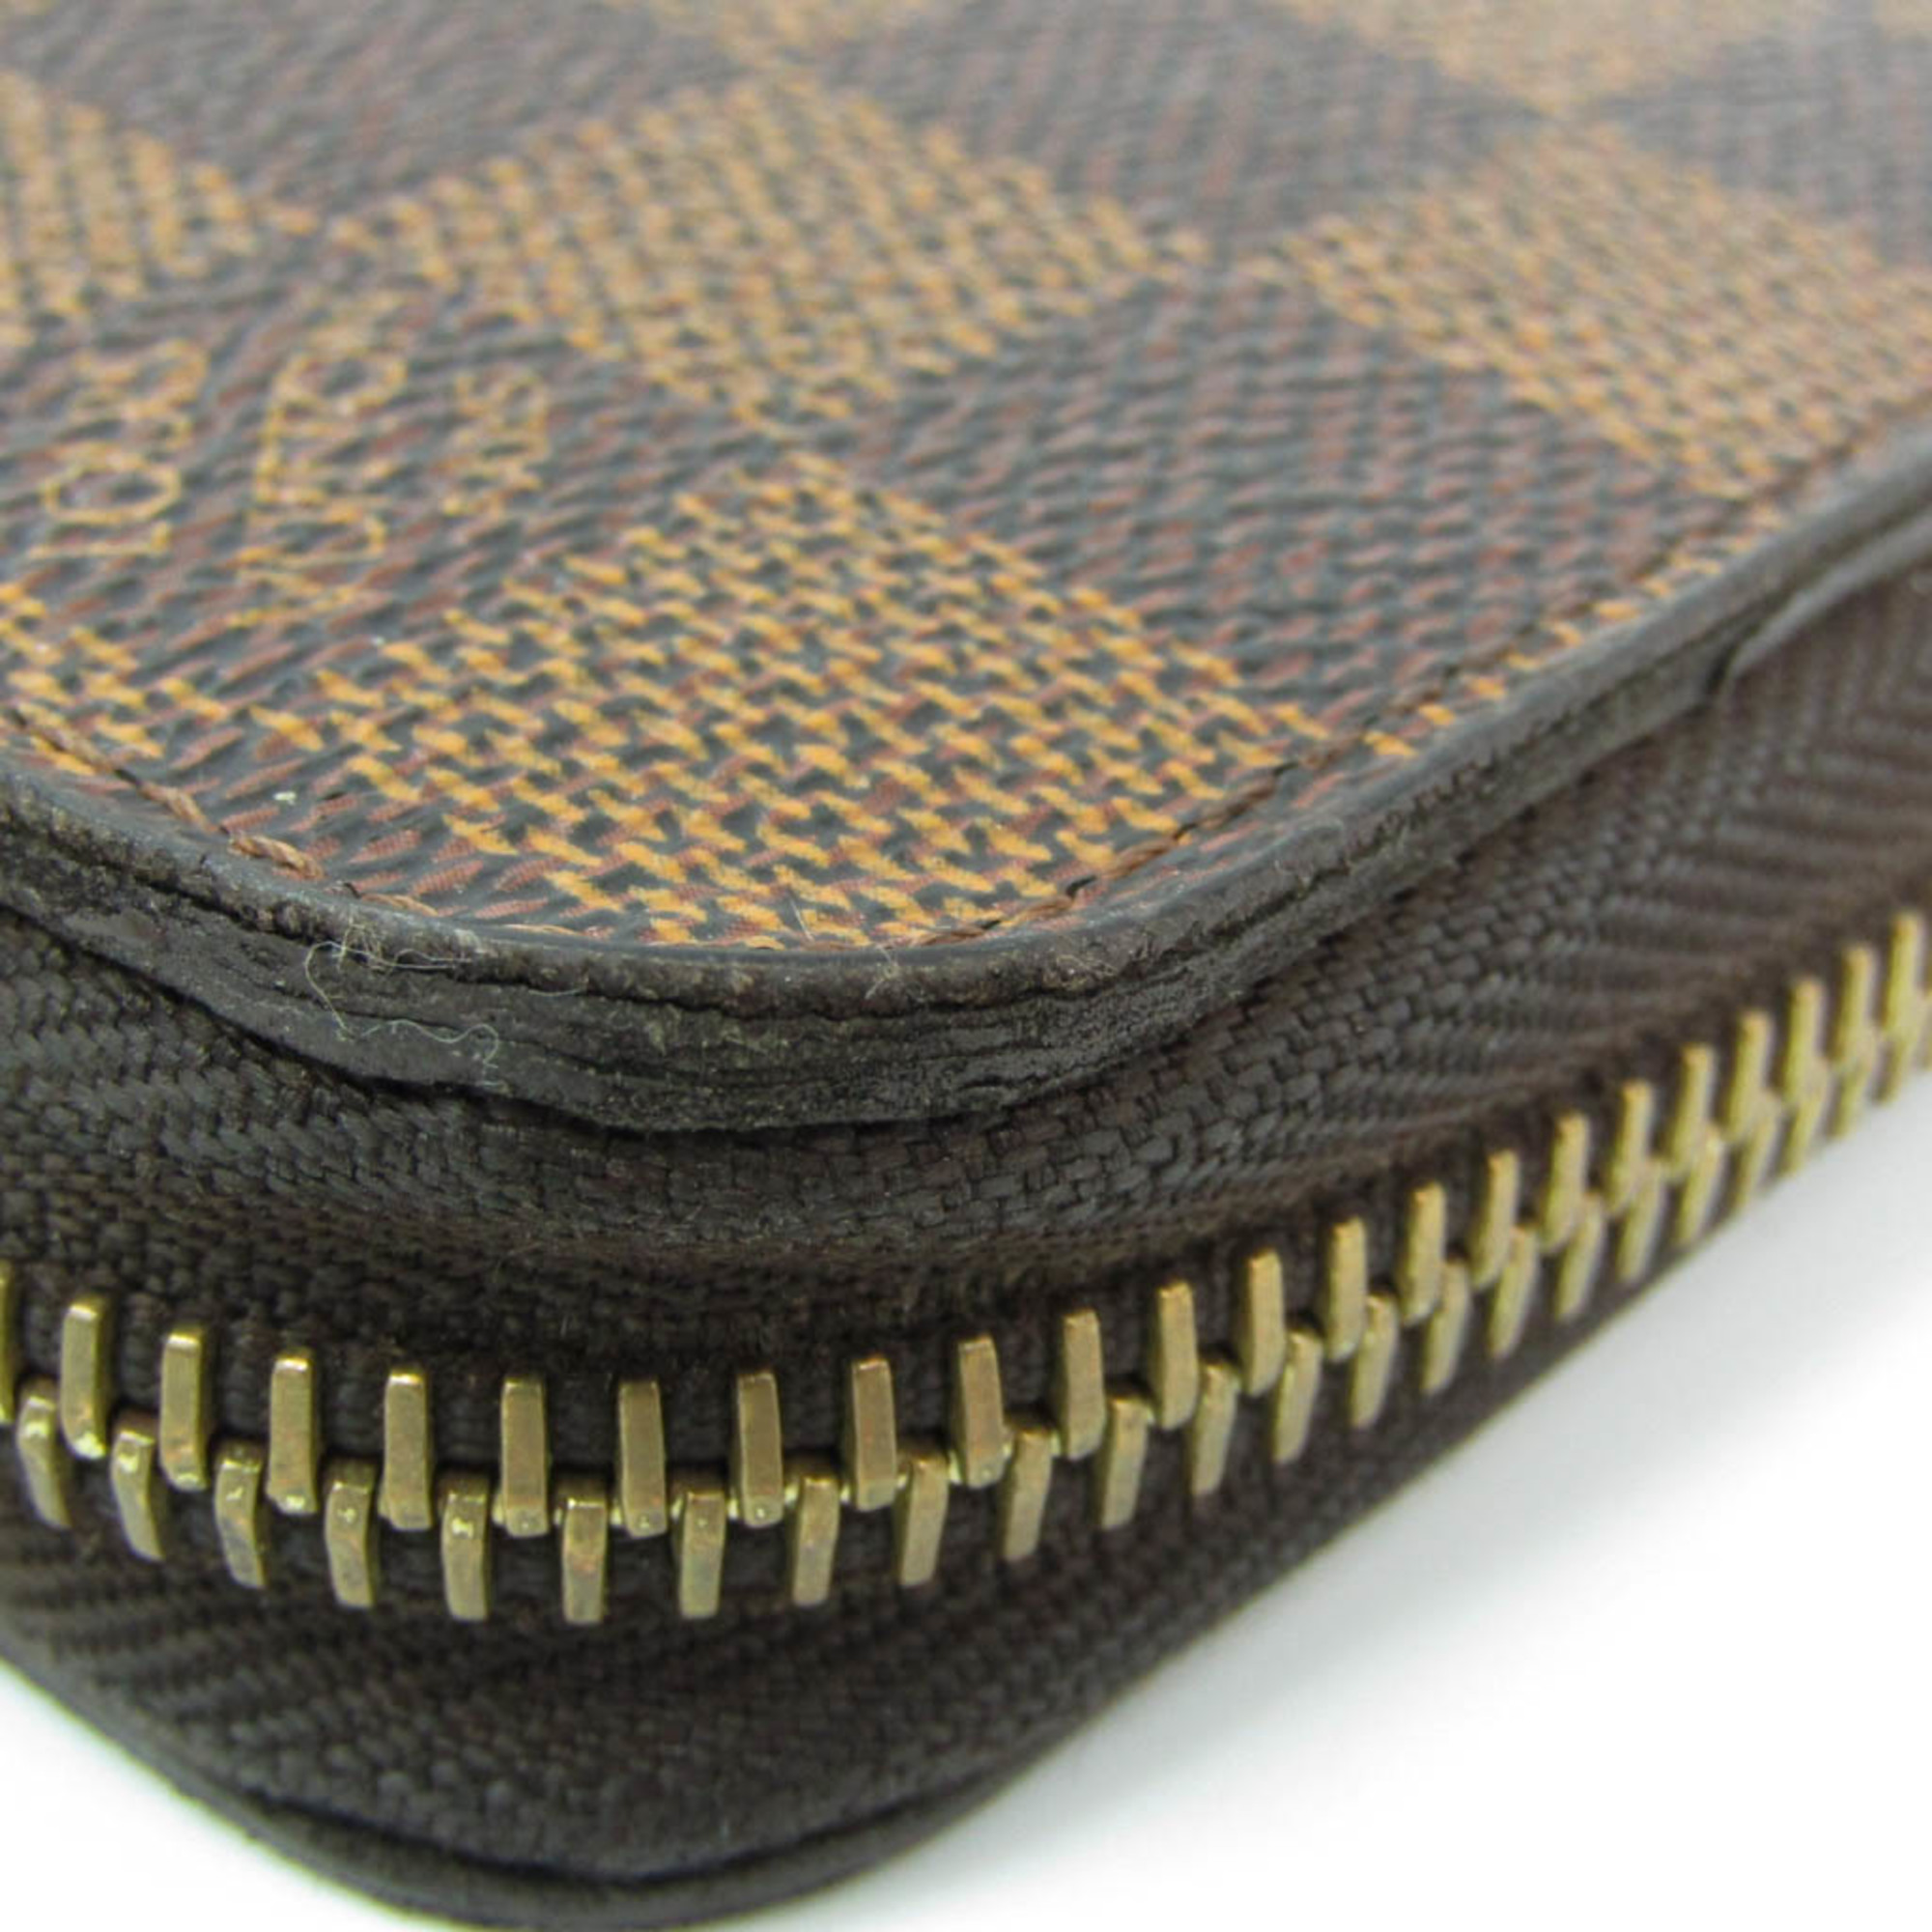 ルイ・ヴィトン(Louis Vuitton) ダミエ ジッピーウォレット N60015 ユニセックス ダミエキャンバス 長財布（二つ折り） エベヌ